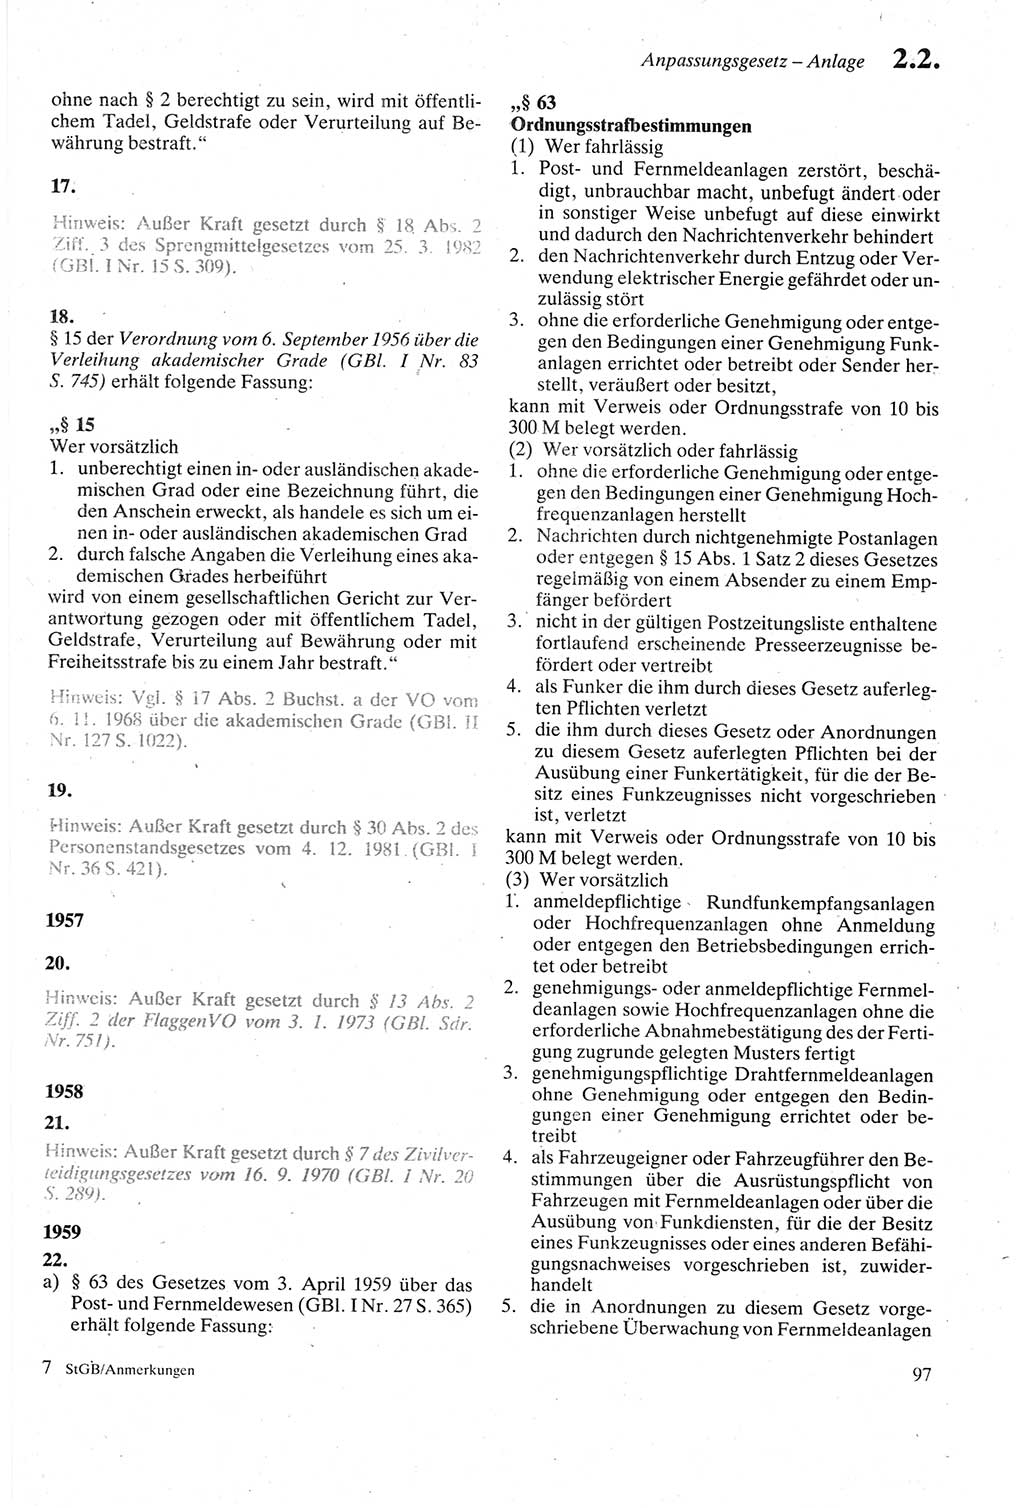 Strafgesetzbuch (StGB) der Deutschen Demokratischen Republik (DDR) sowie angrenzende Gesetze und Bestimmungen 1979, Seite 97 (StGB DDR Ges. Best. 1979, S. 97)